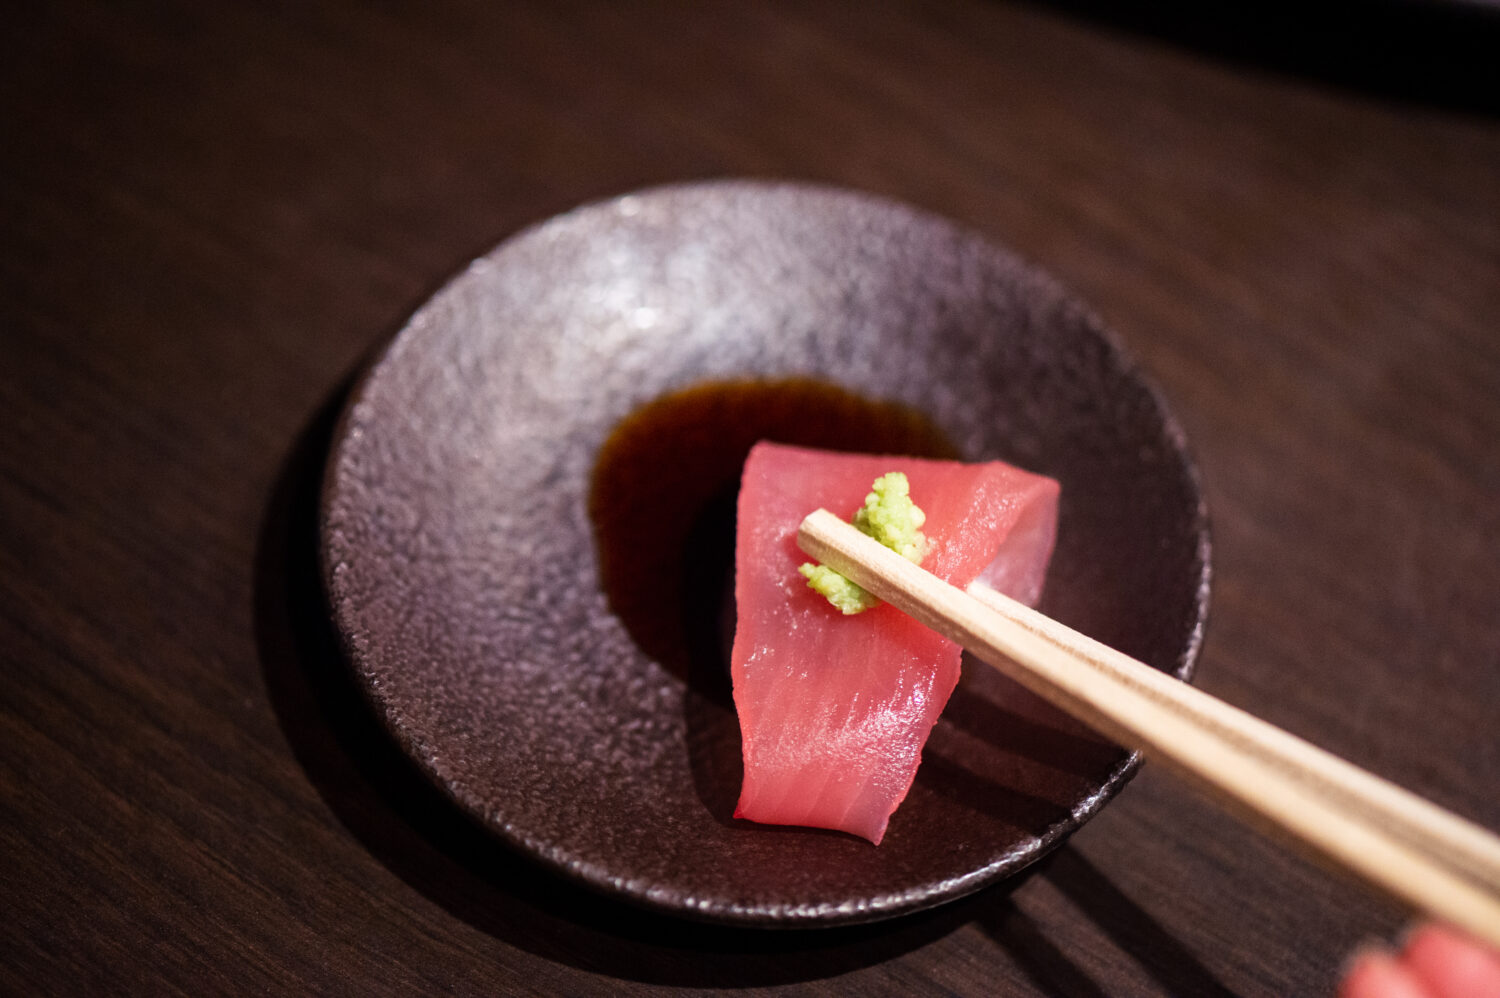 生魚片　刺身　sashimi